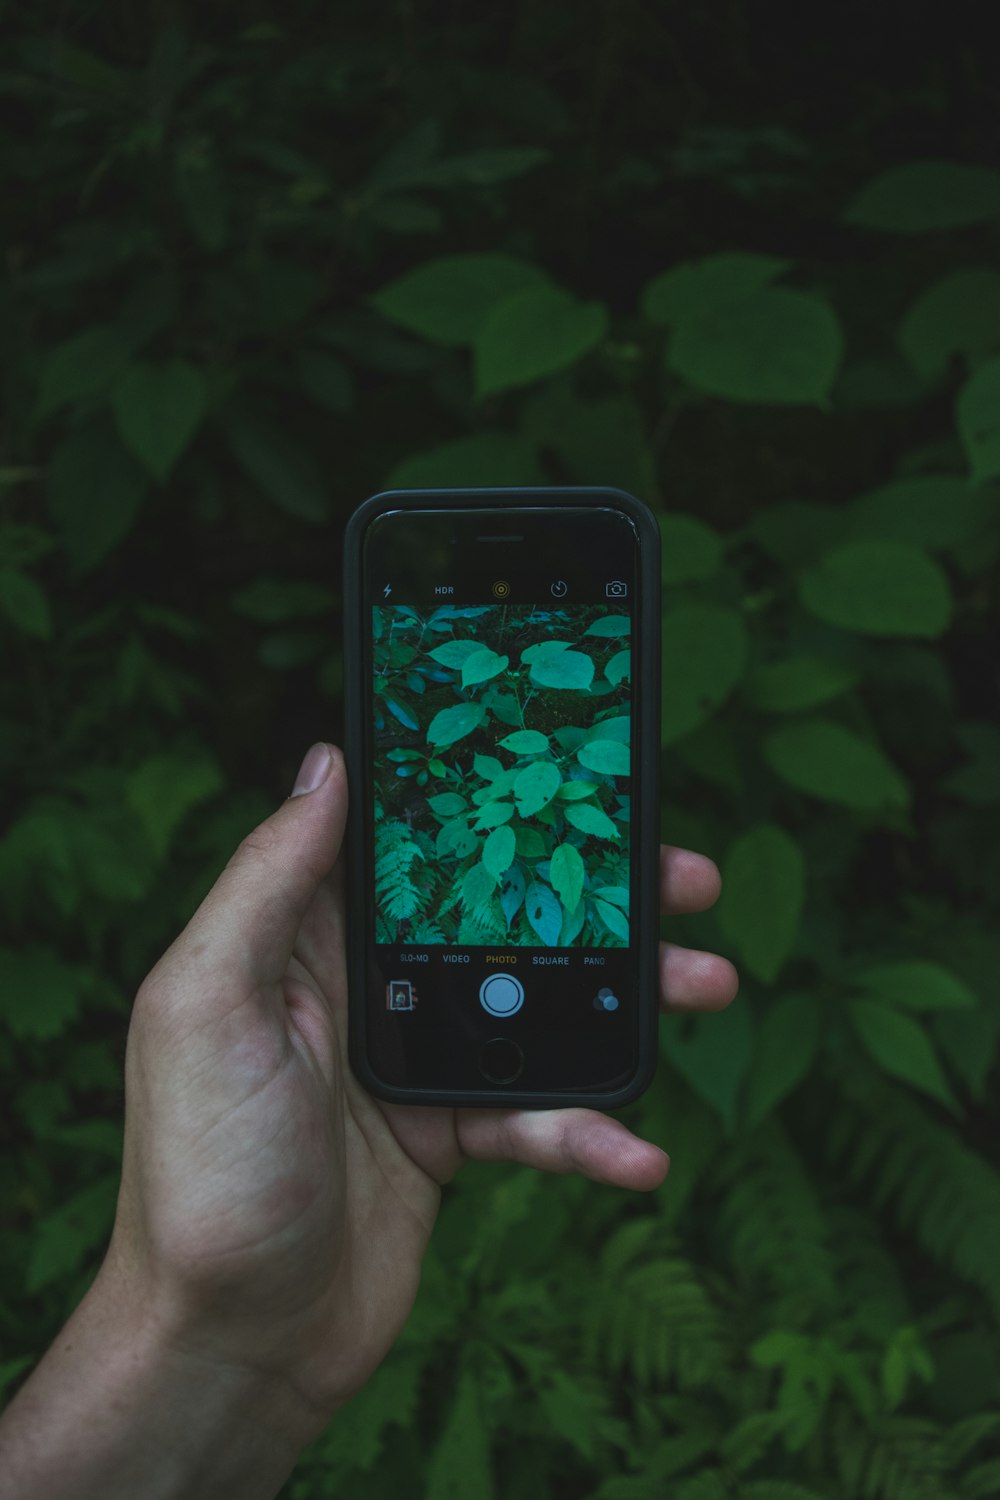 스페이스 그레이 iPhone 5s 녹색 잎의 사진을 찍고